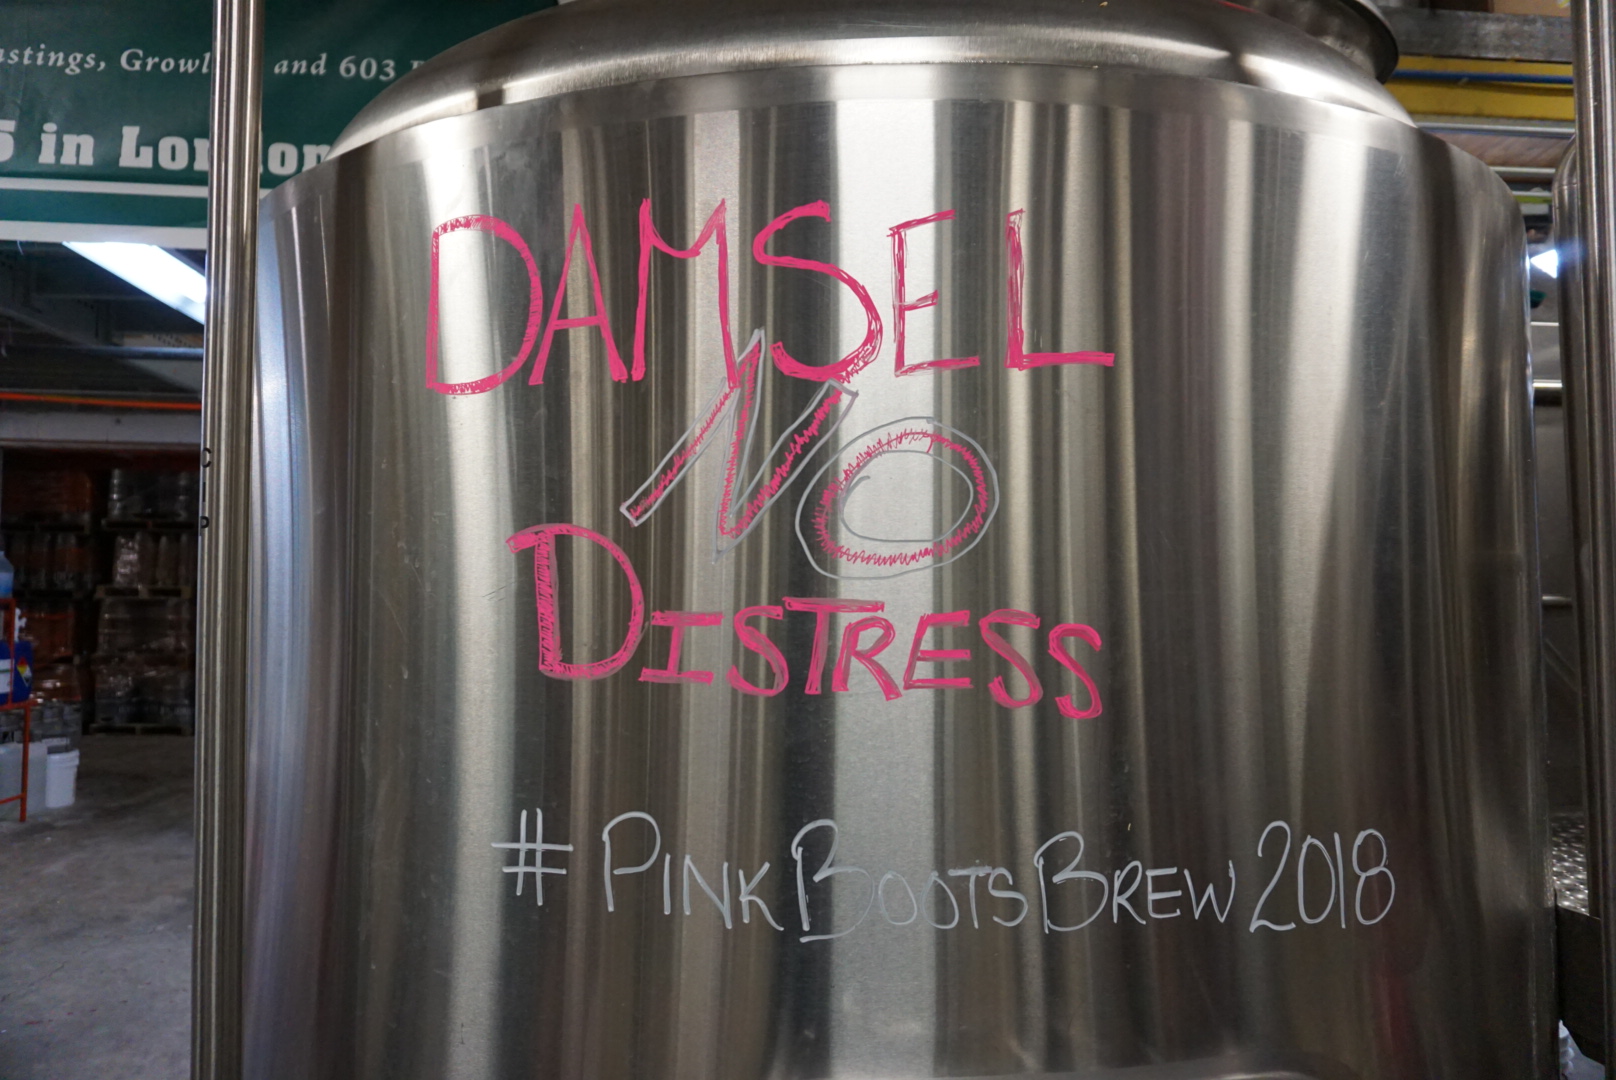 NH Pink Boots Damsel No Distress